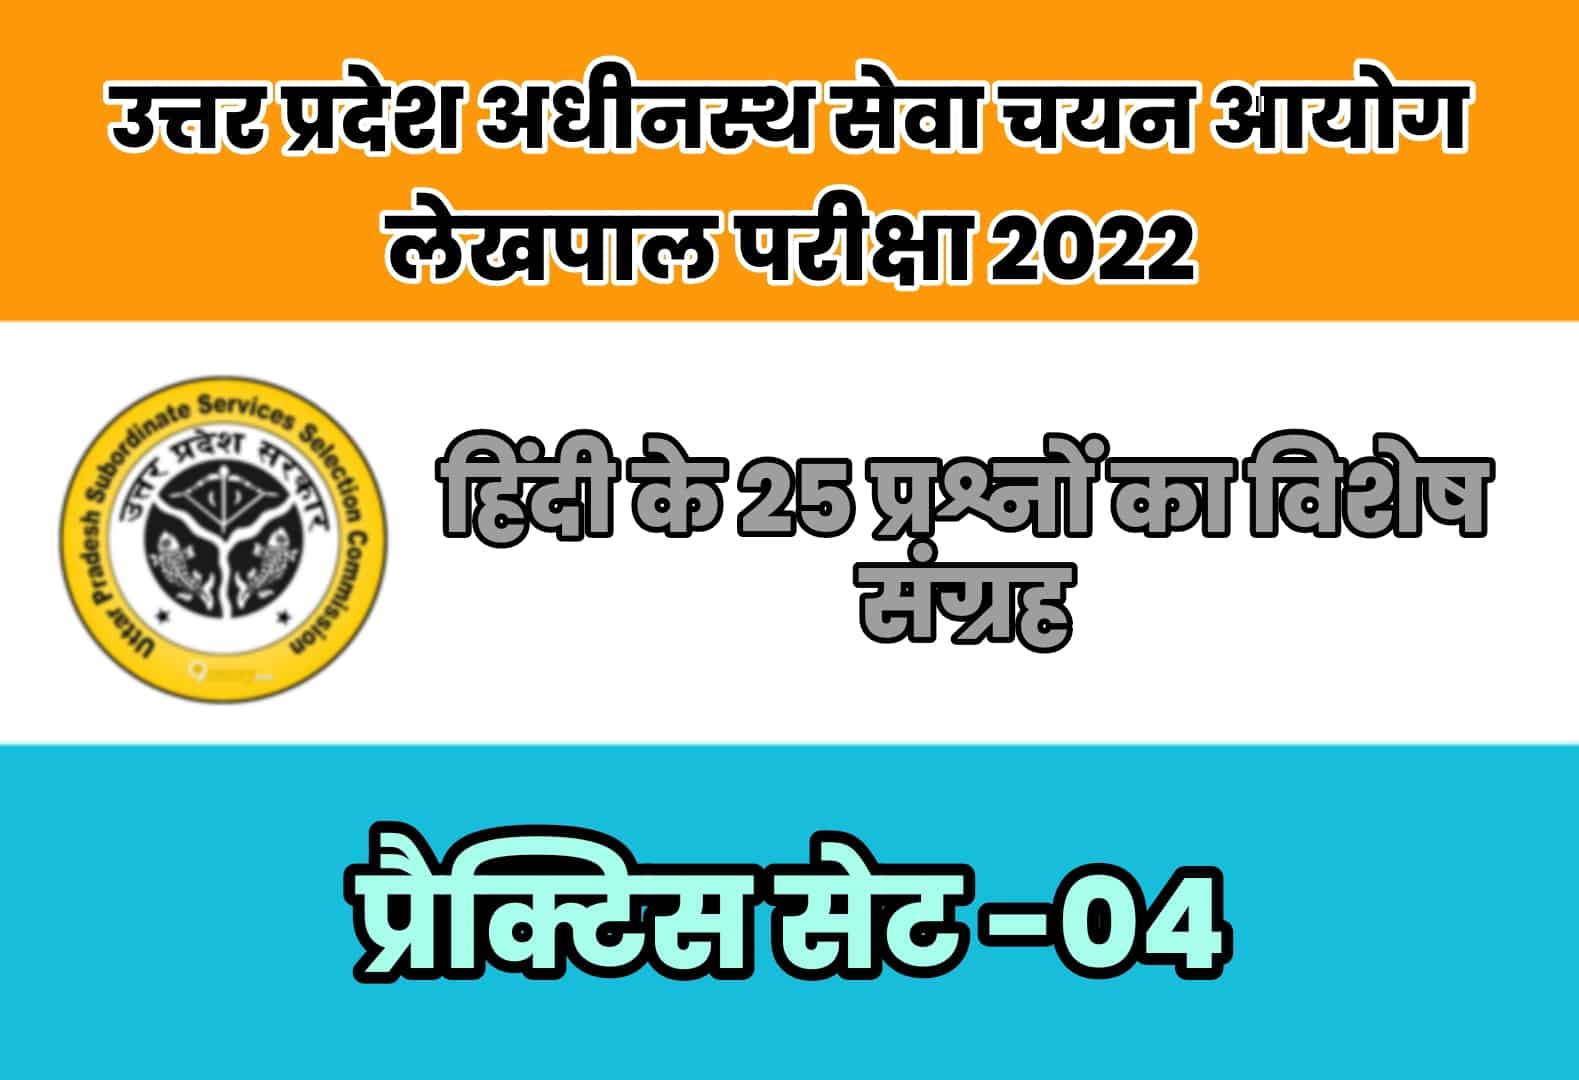 UP Lekhpal Exam 2022 प्रैक्टिस सेट 04 : नए पाठ्यक्रम पर आधारित हिंदी के 25 बेहद महत्वपूर्ण प्रश्नों का संग्रह, अवश्य पढ़ें